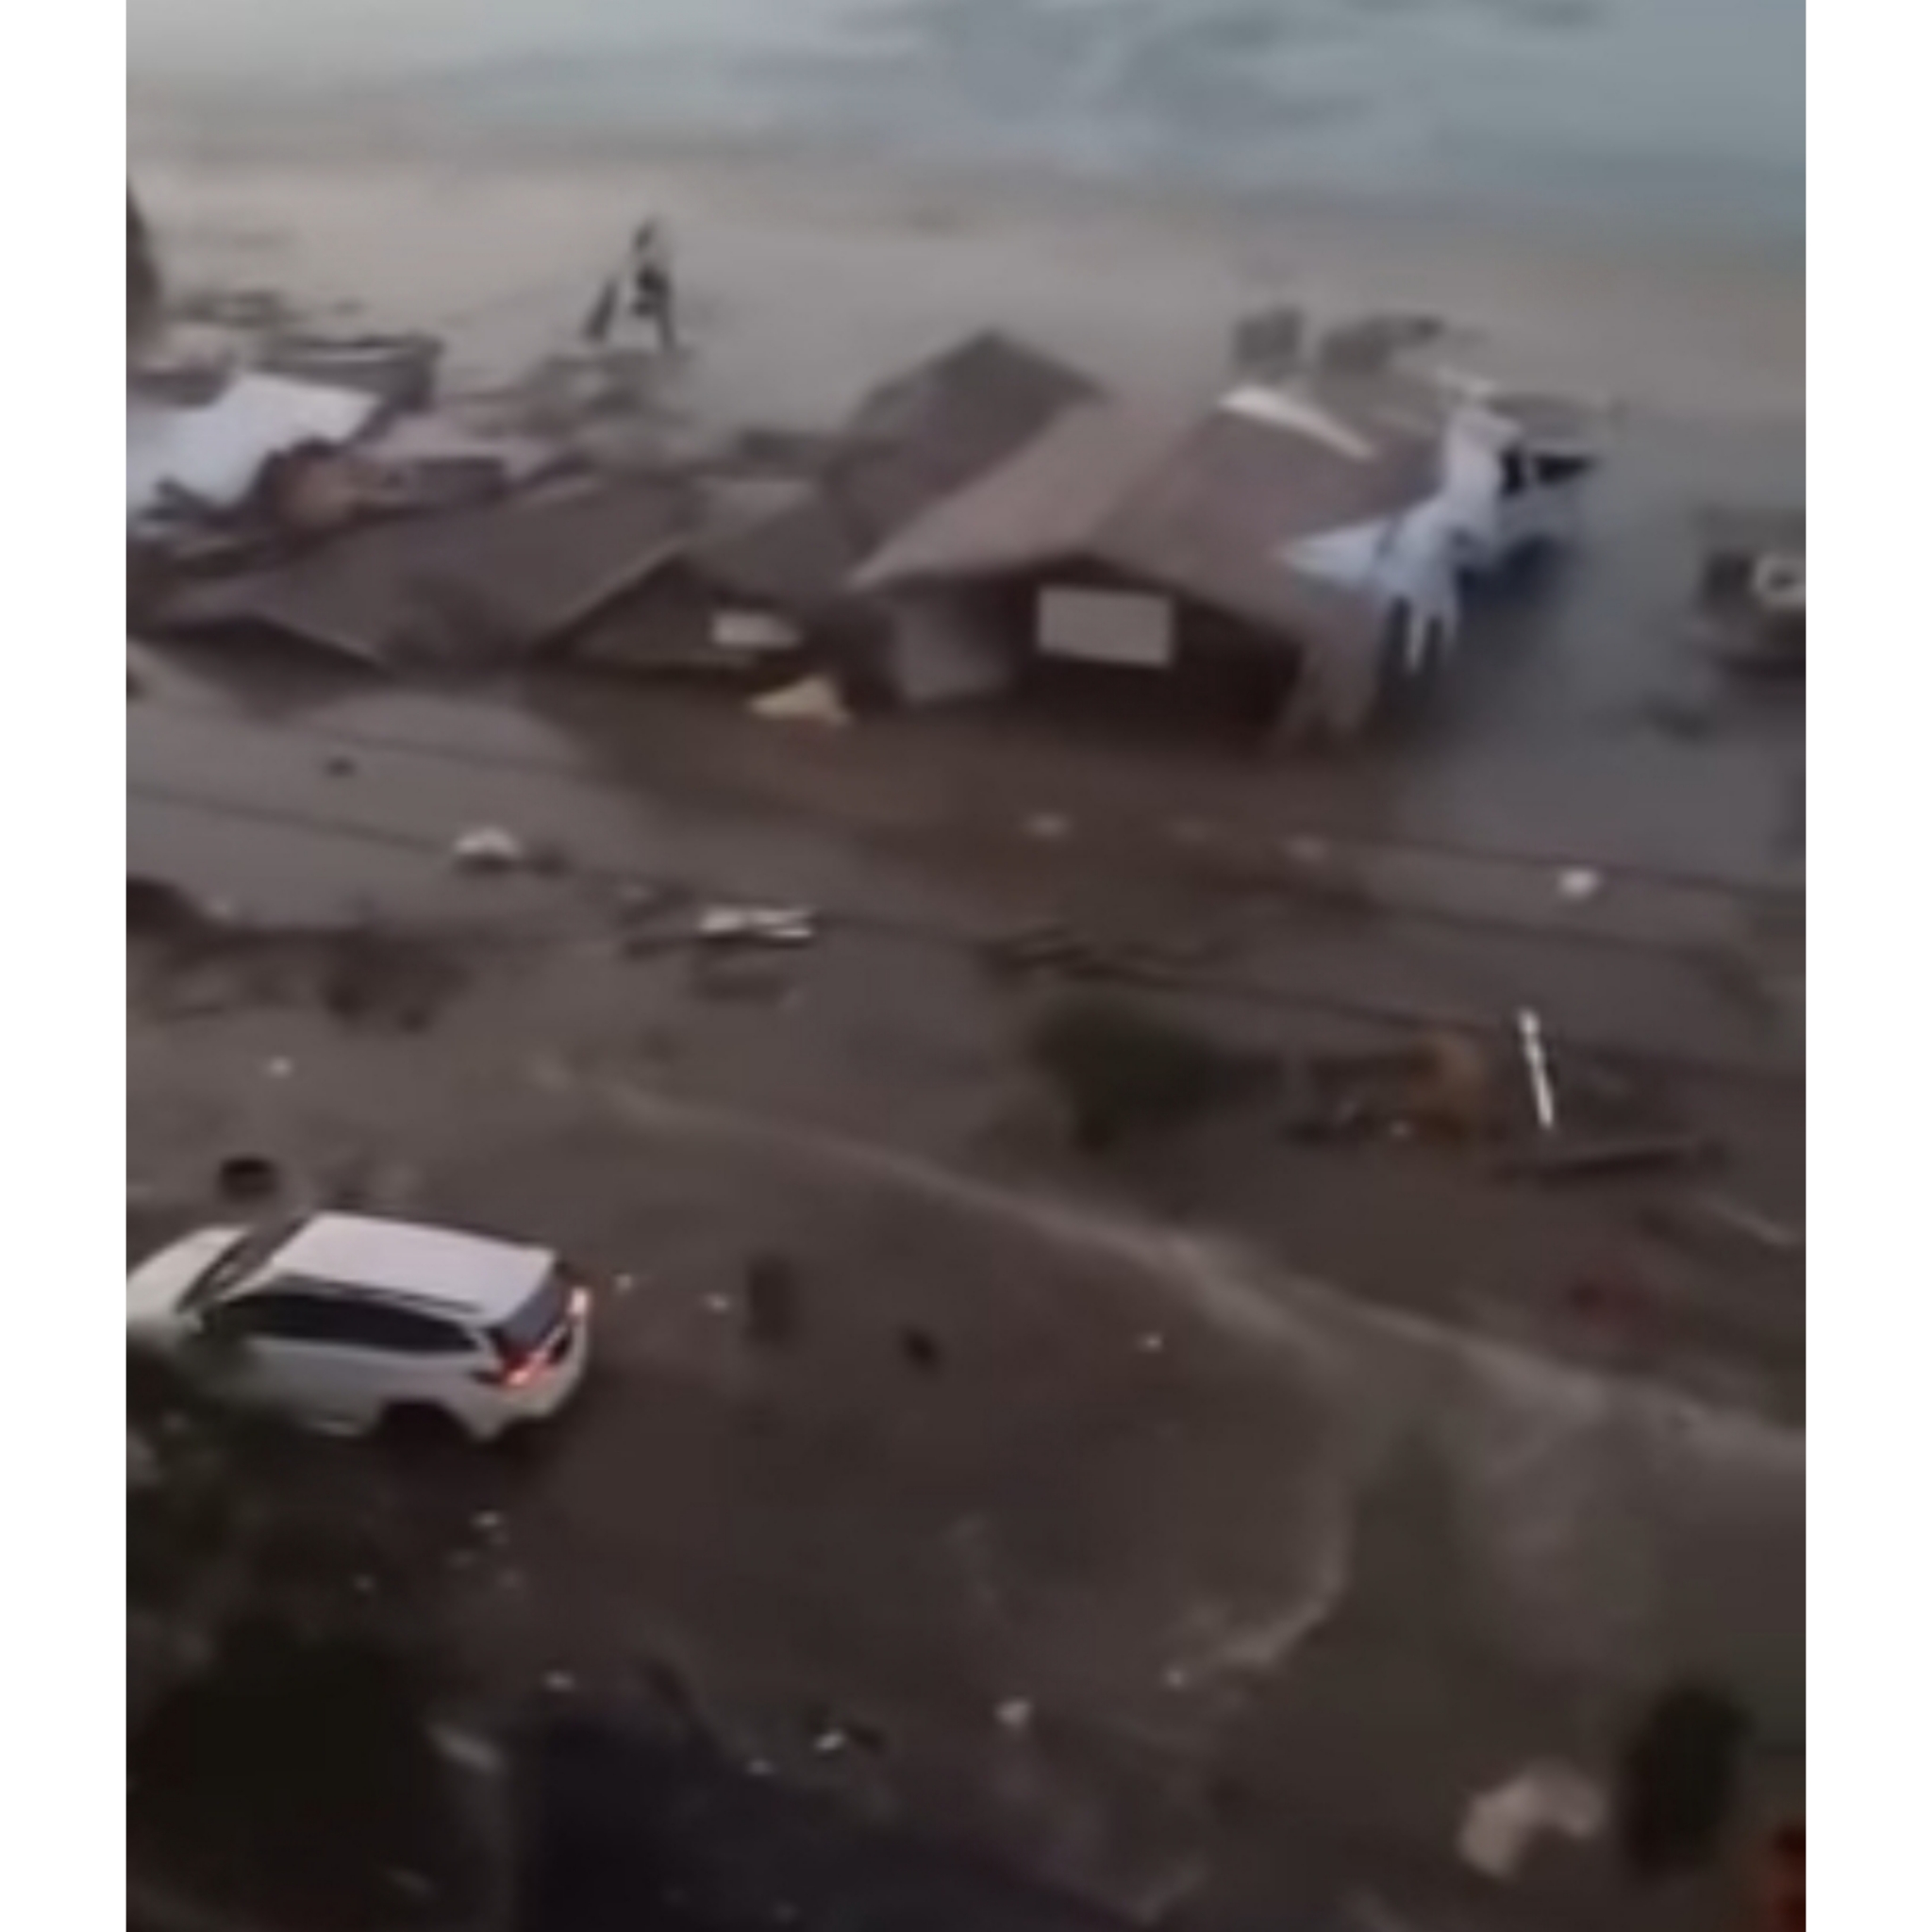 MENGERIKAN... Ini Video Detik-detik Tsunami Terjang Pemukiman Warga di Palu!